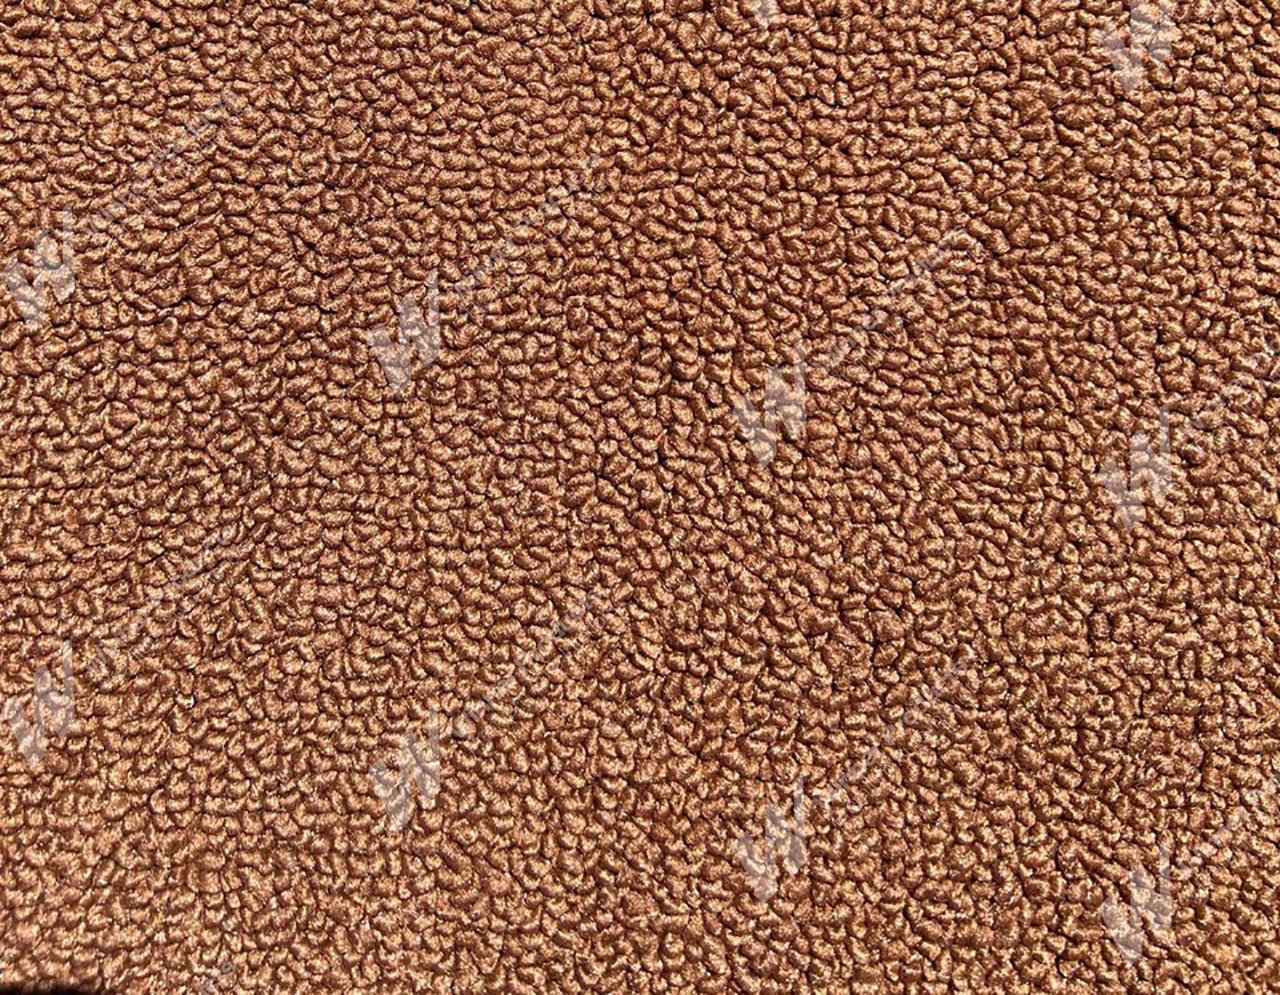 Ford Falcon 500 XB 500 Coupe P Parchment Carpet (Image 1 of 1)